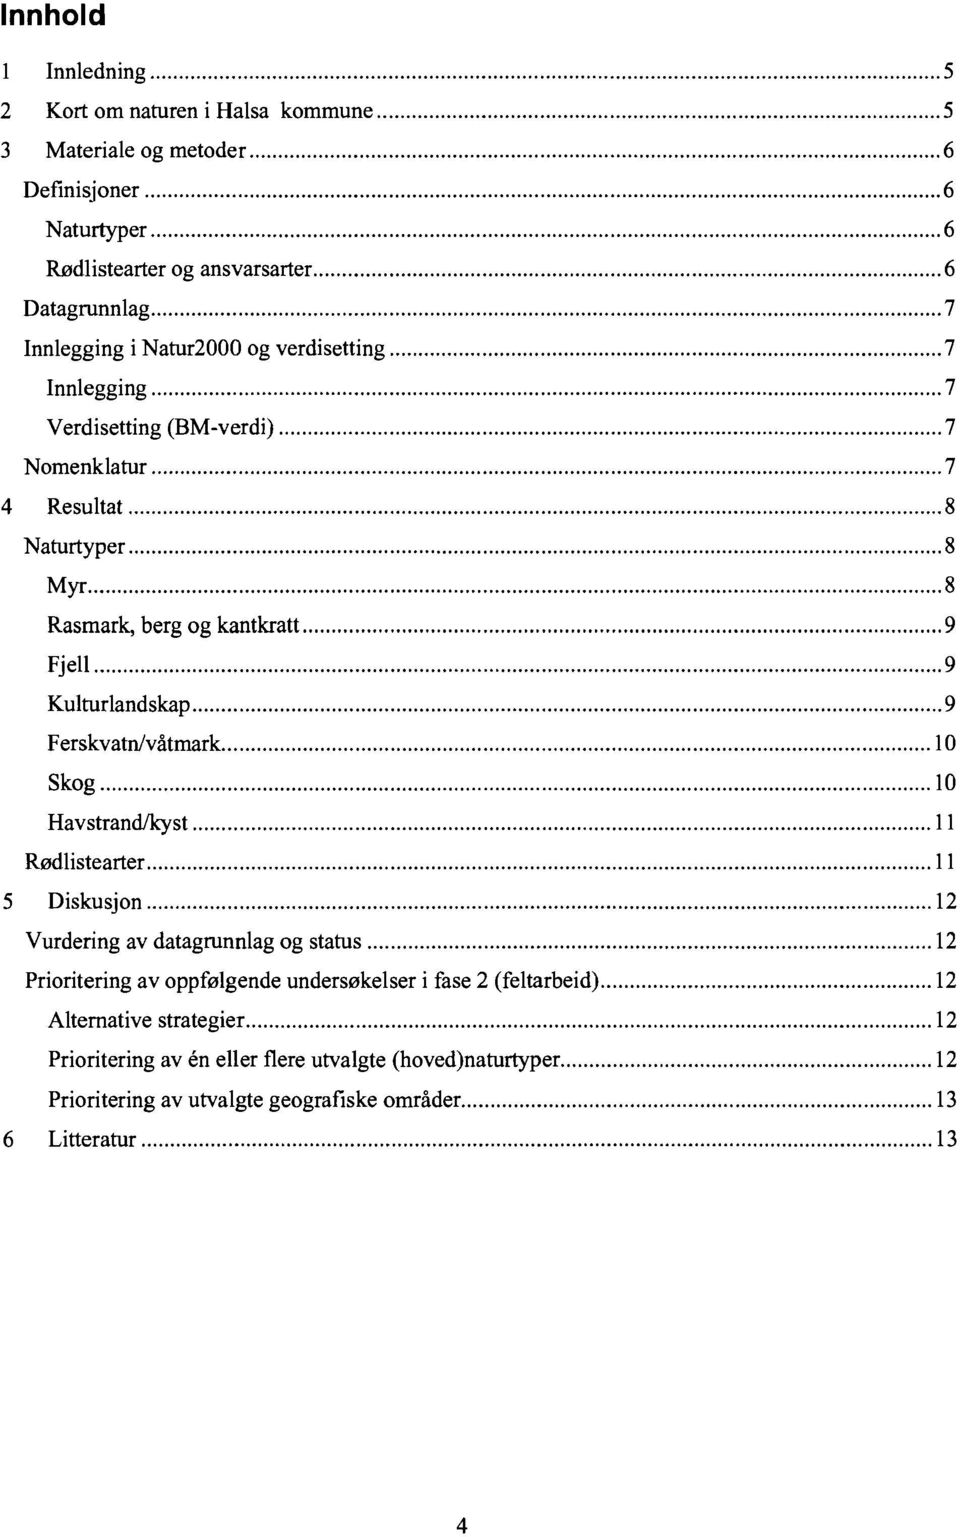 Ferskvatn/våtmark 10 Skog 10 HavstrandIkyst 11 Rødlistearter 11 5 Diskusjon 12 Vurdering av datagrunnlag og status 12 Prioritering av oppfølgende undersøkelser i fase 2